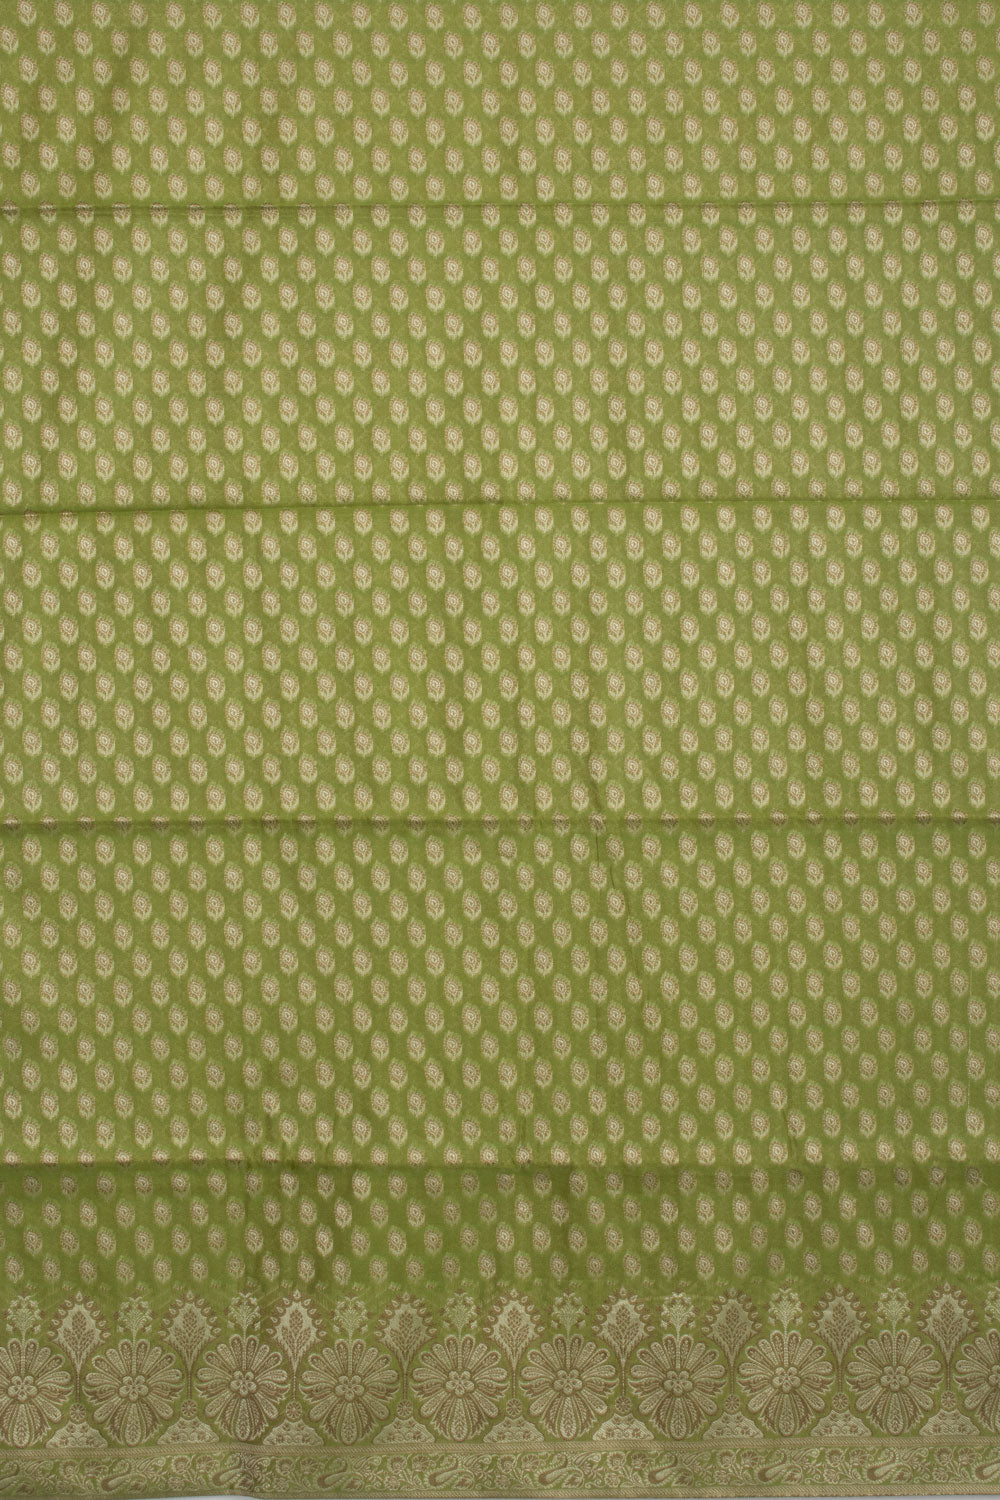 Green Banarasi Cotton 3-Piece Salwar Suit Material - Avishya